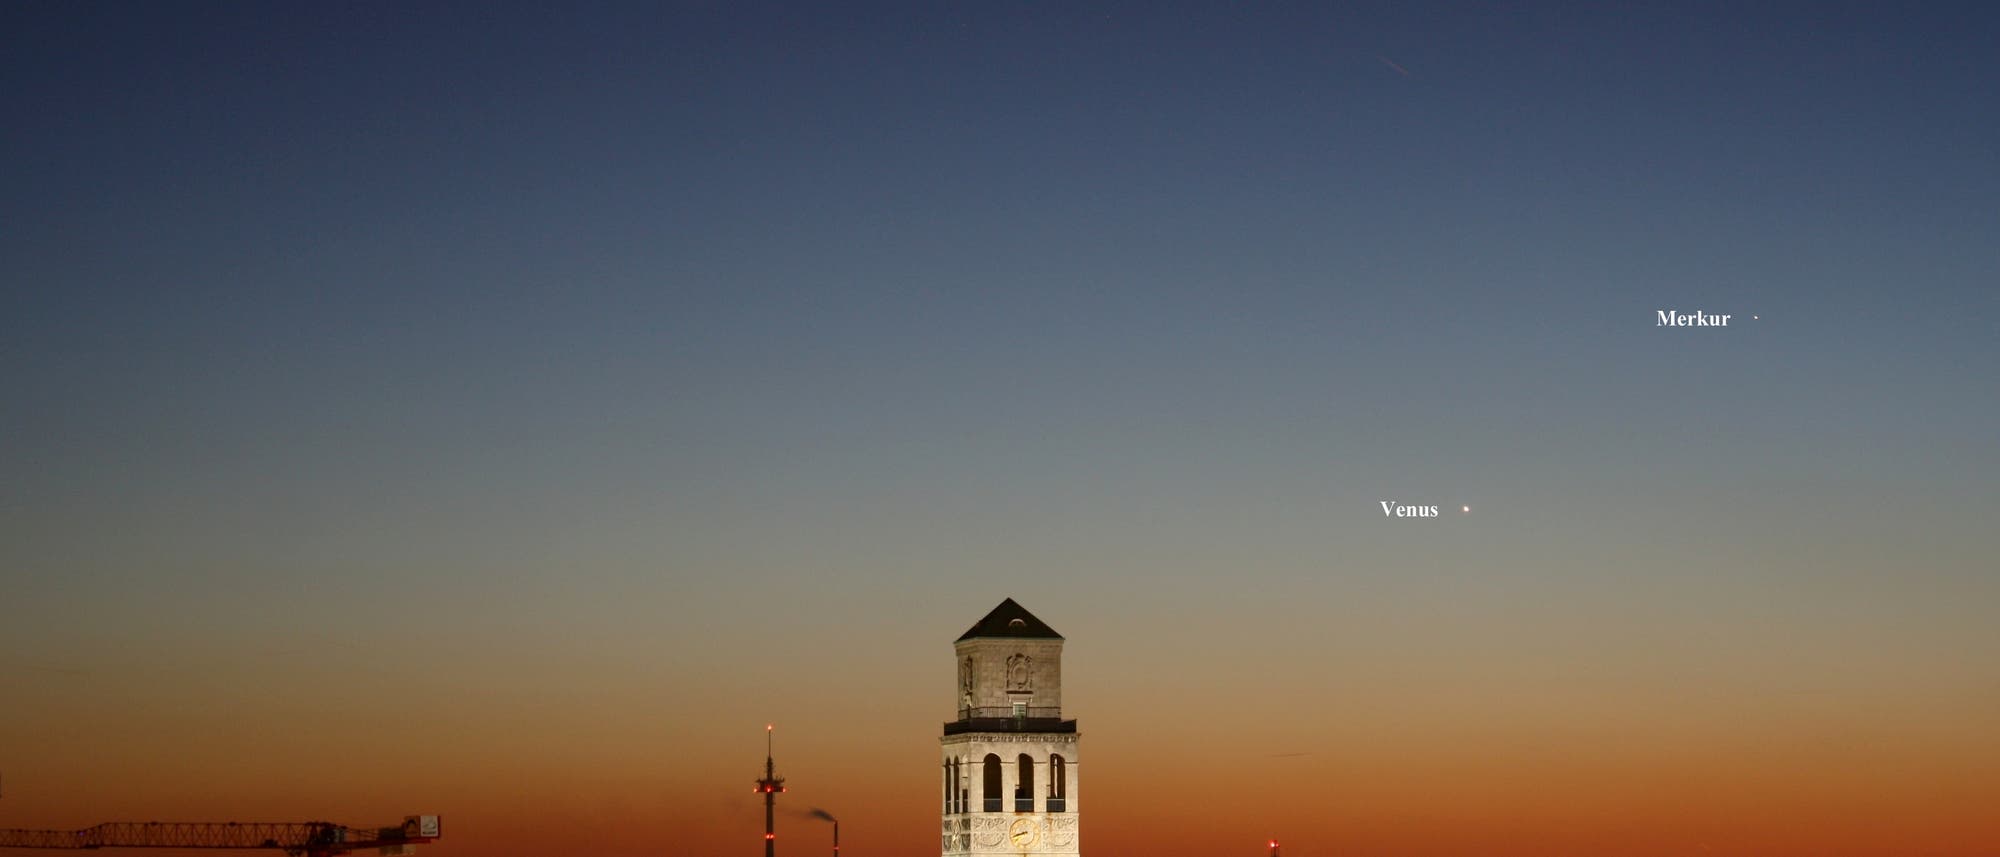 Mond, Merkur und Venus gemeinsam am Abendhimmel